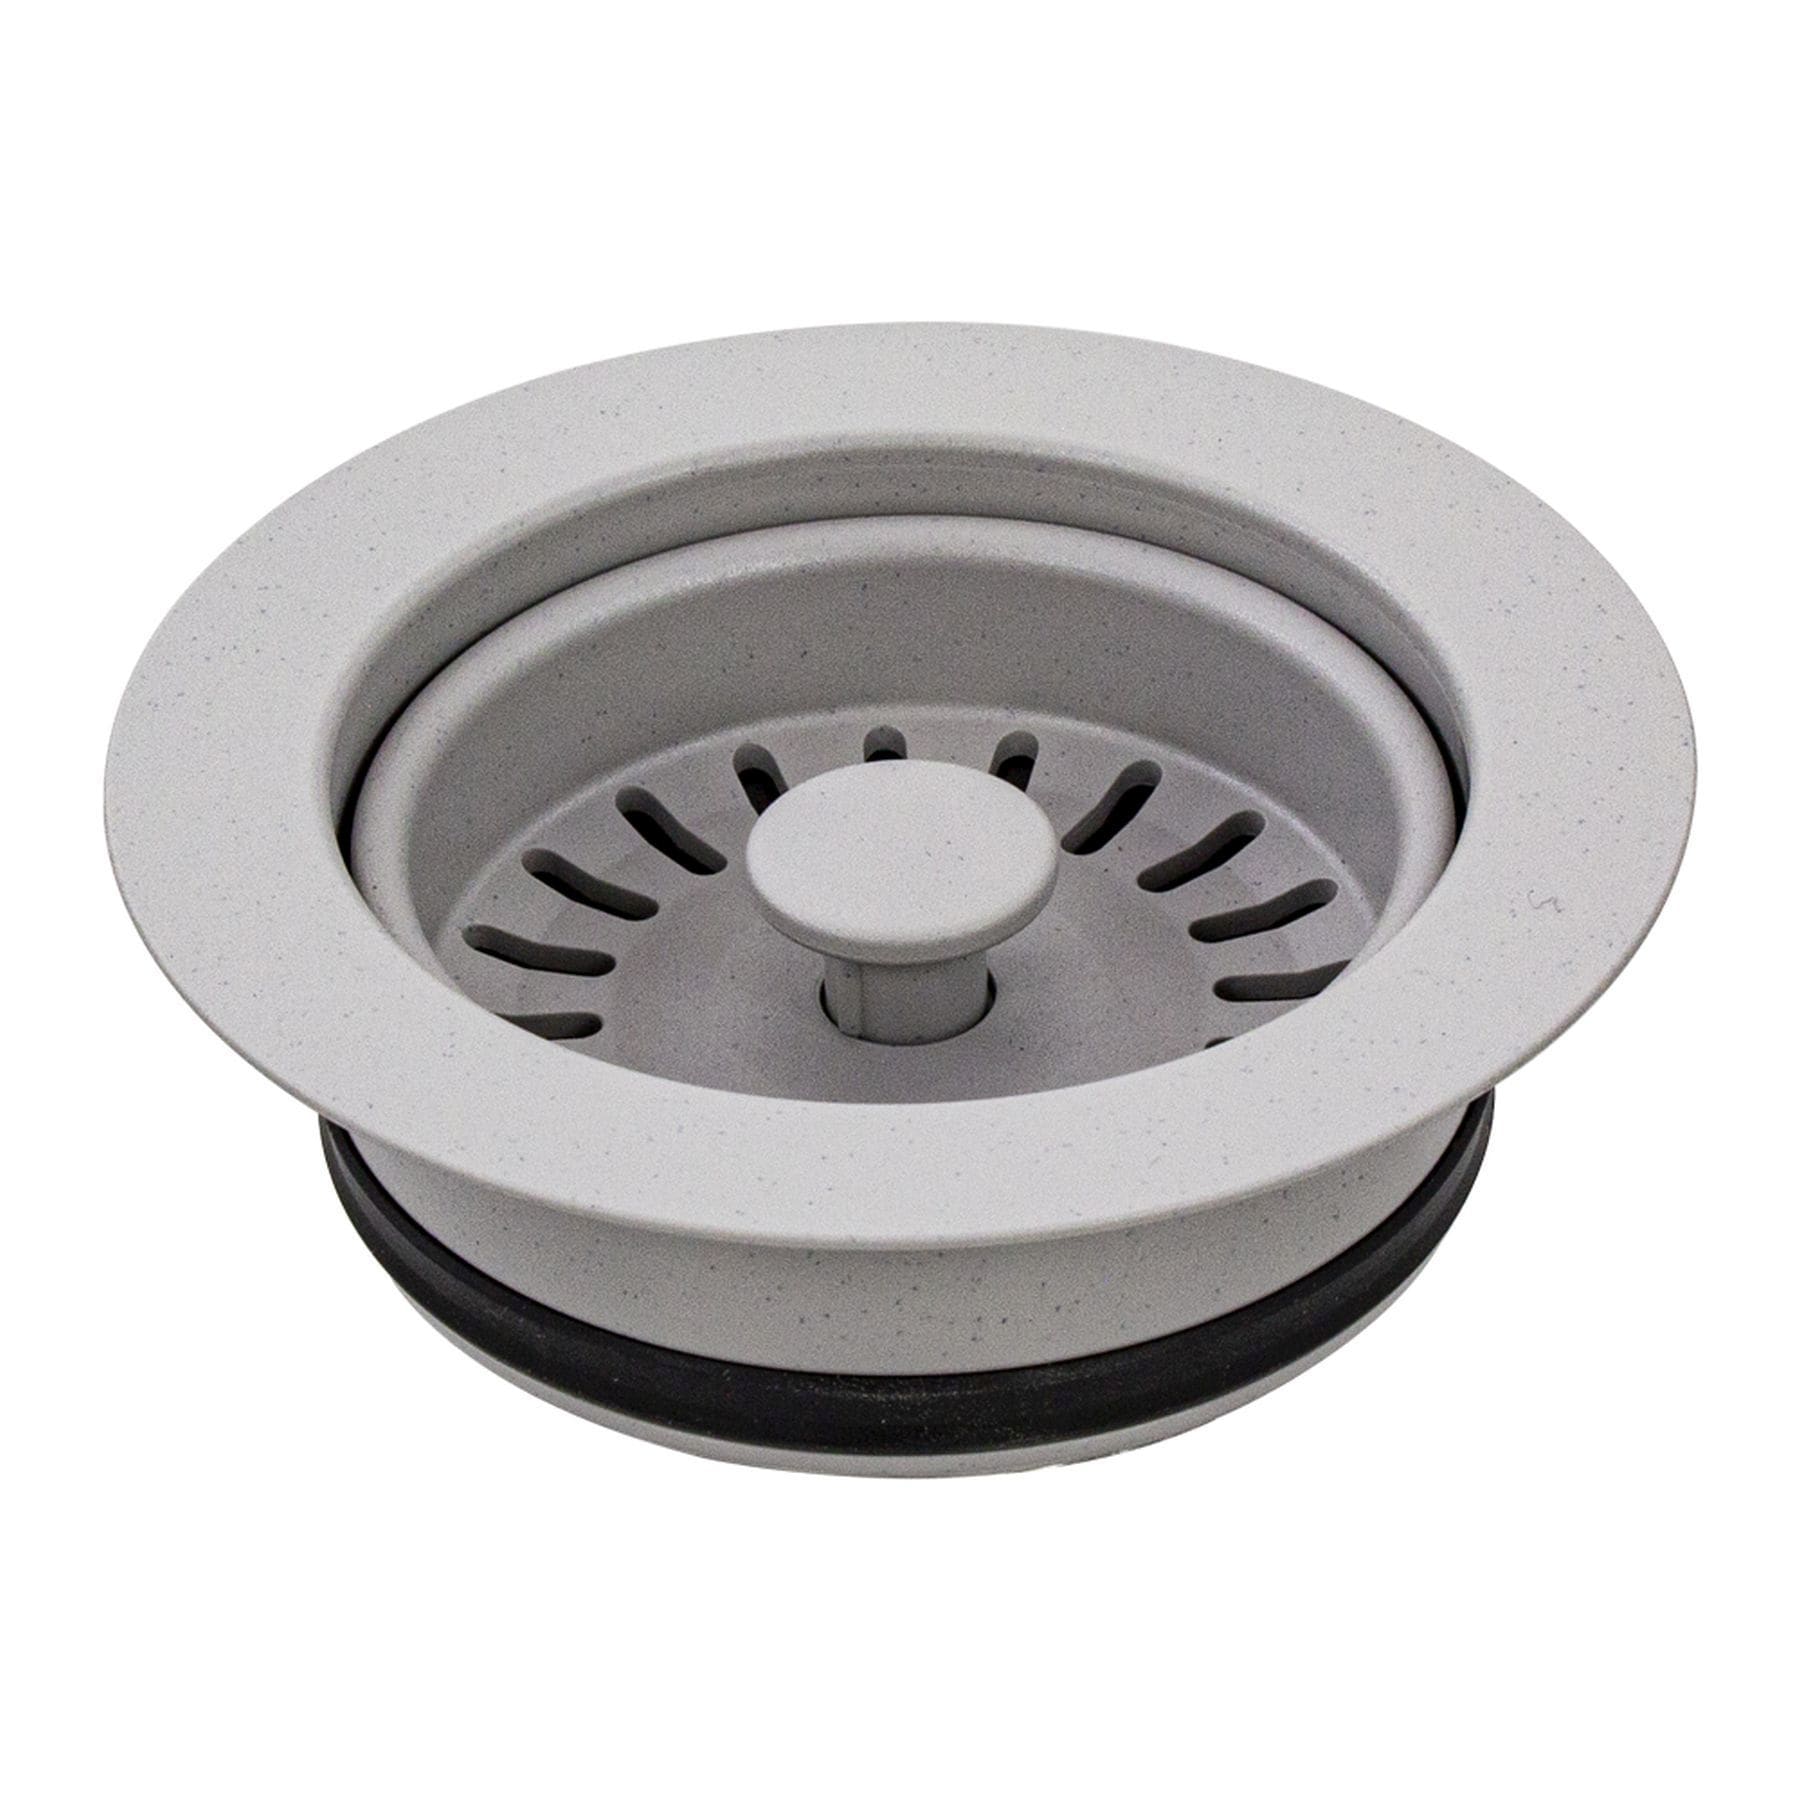 Details about   Kitchen Waste Steel Sink Strainer Plug Drain Basket New Drainer New 